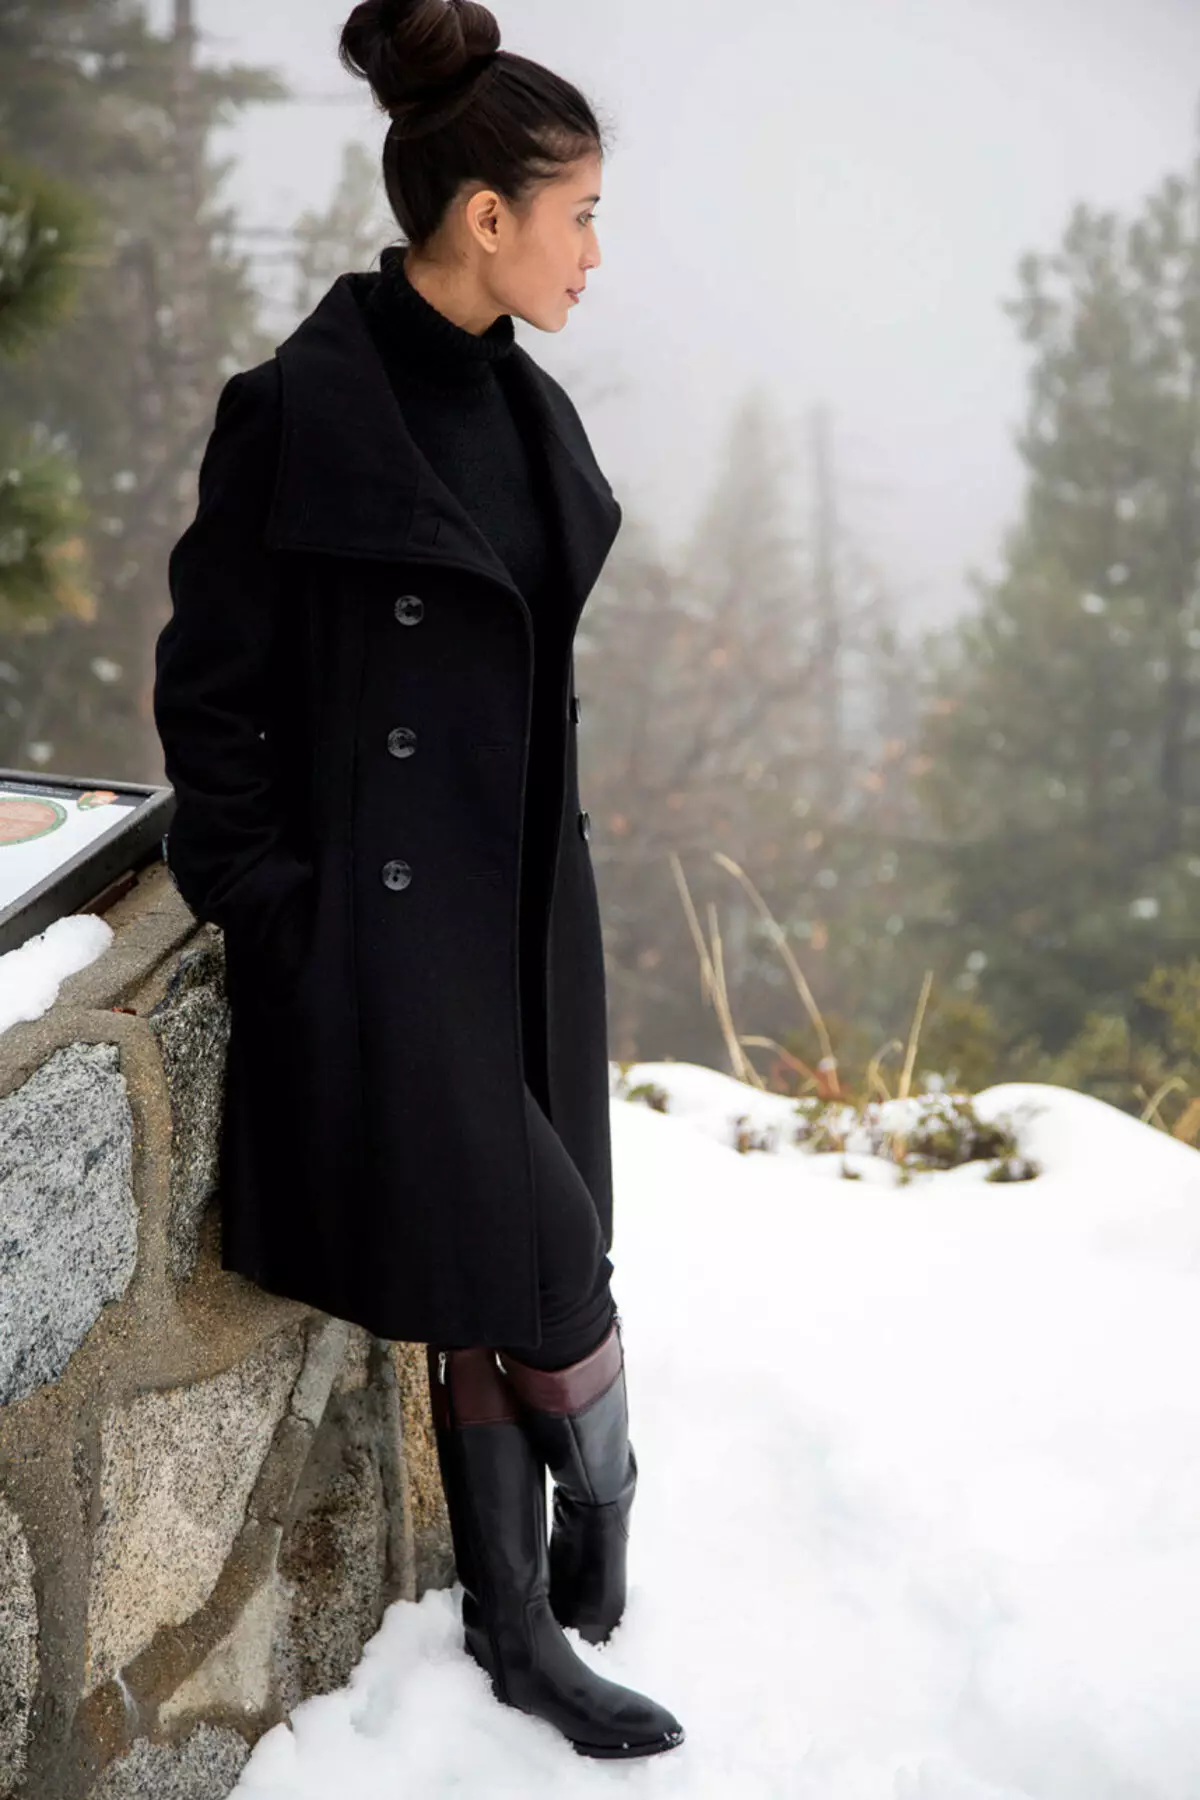 Kobieta czarny płaszcz (172 zdjęcia): długie, krótkie, z kapturem, czarno-białe, proste, skórzane rękawy, dopasowanie, skóra 611_4